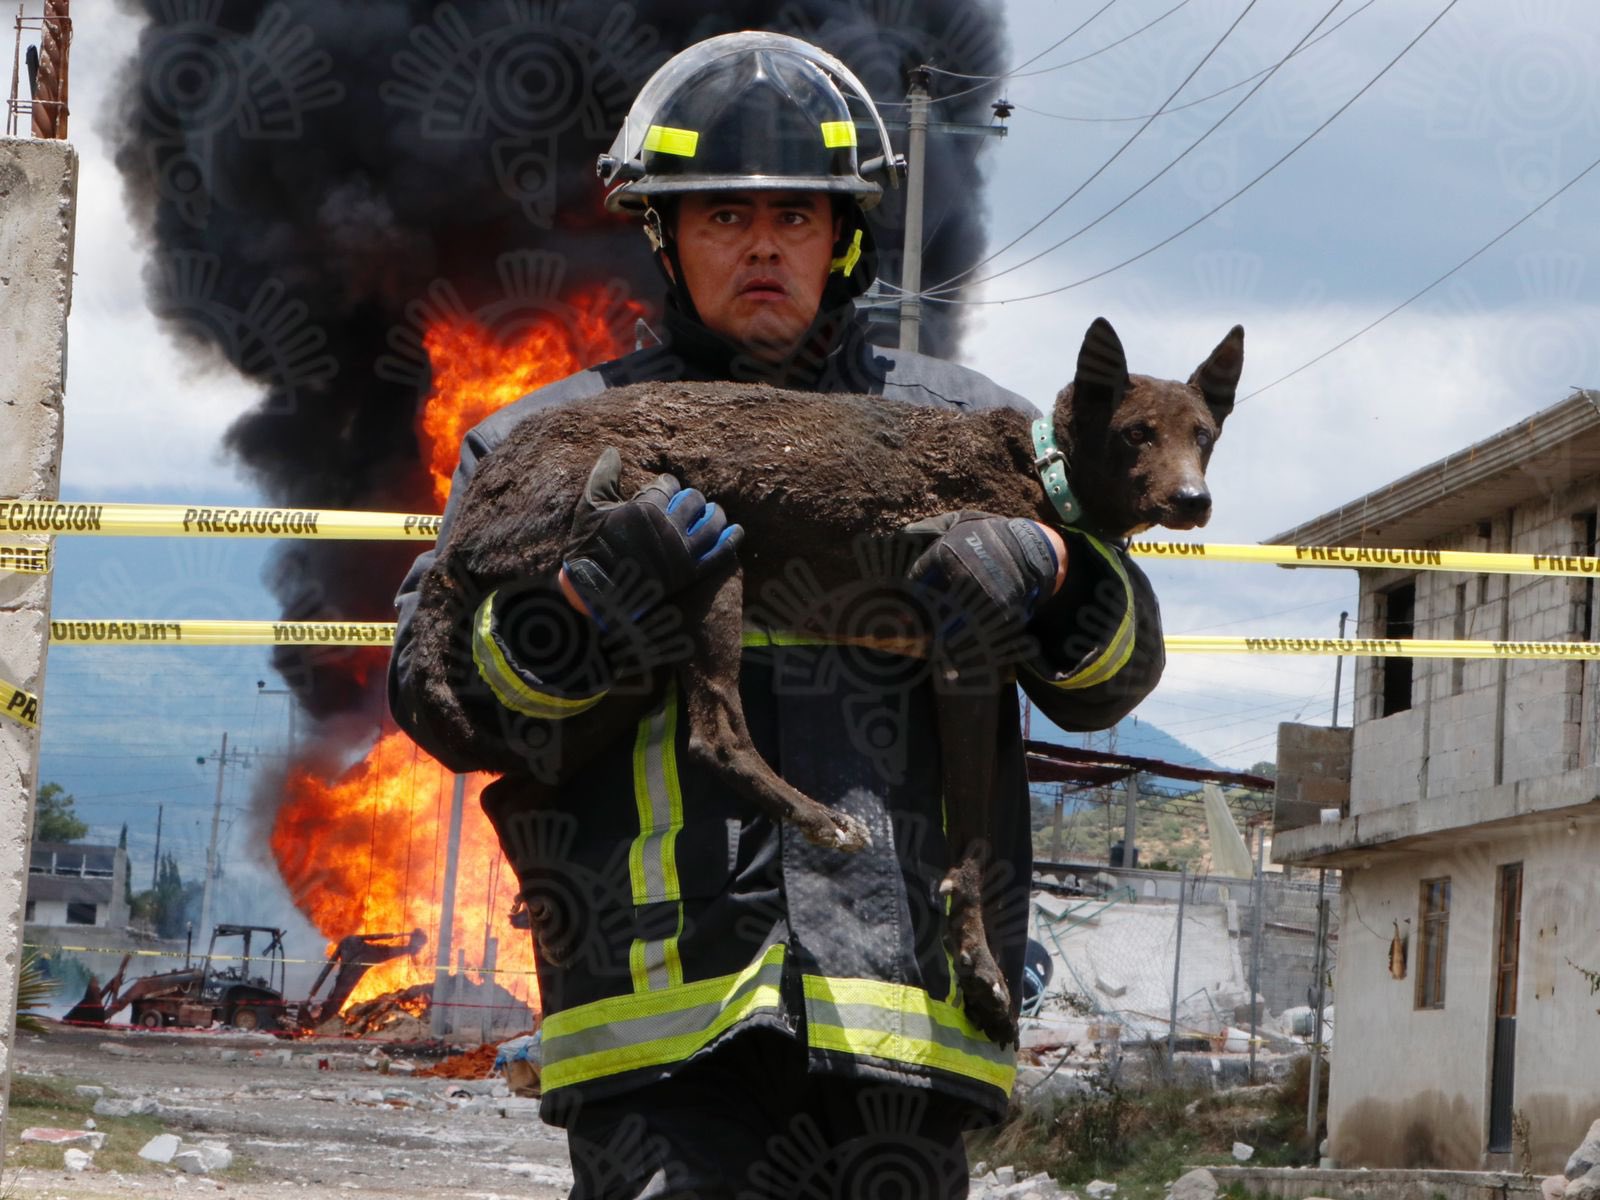 "Agentes del Heroico Cuerpo de Bomberos rescataron a un perro que quedó atrapado tras la explosión en Amozoc" (Fuente: Twitter/@SSPGobPue)